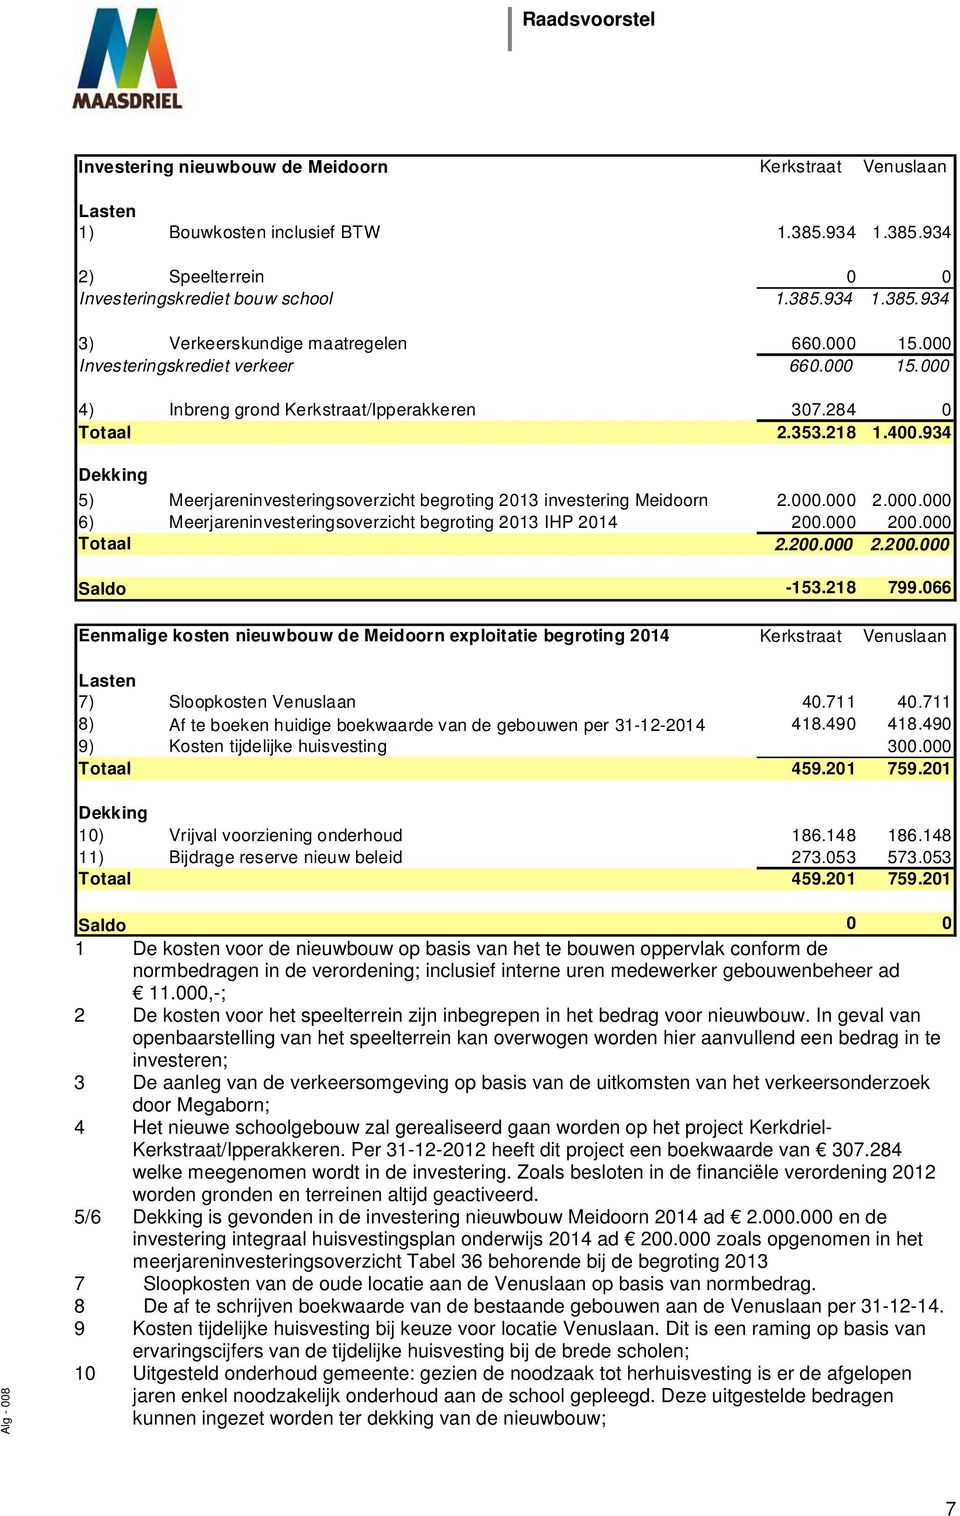 934 Dekking 5) Meerjareninvesteringsoverzicht begroting 2013 investering Meidoorn 2.000.000 2.000.000 6) Meerjareninvesteringsoverzicht begroting 2013 IHP 2014 200.000 200.000 Totaal 2.200.000 2.200.000 Saldo -153.